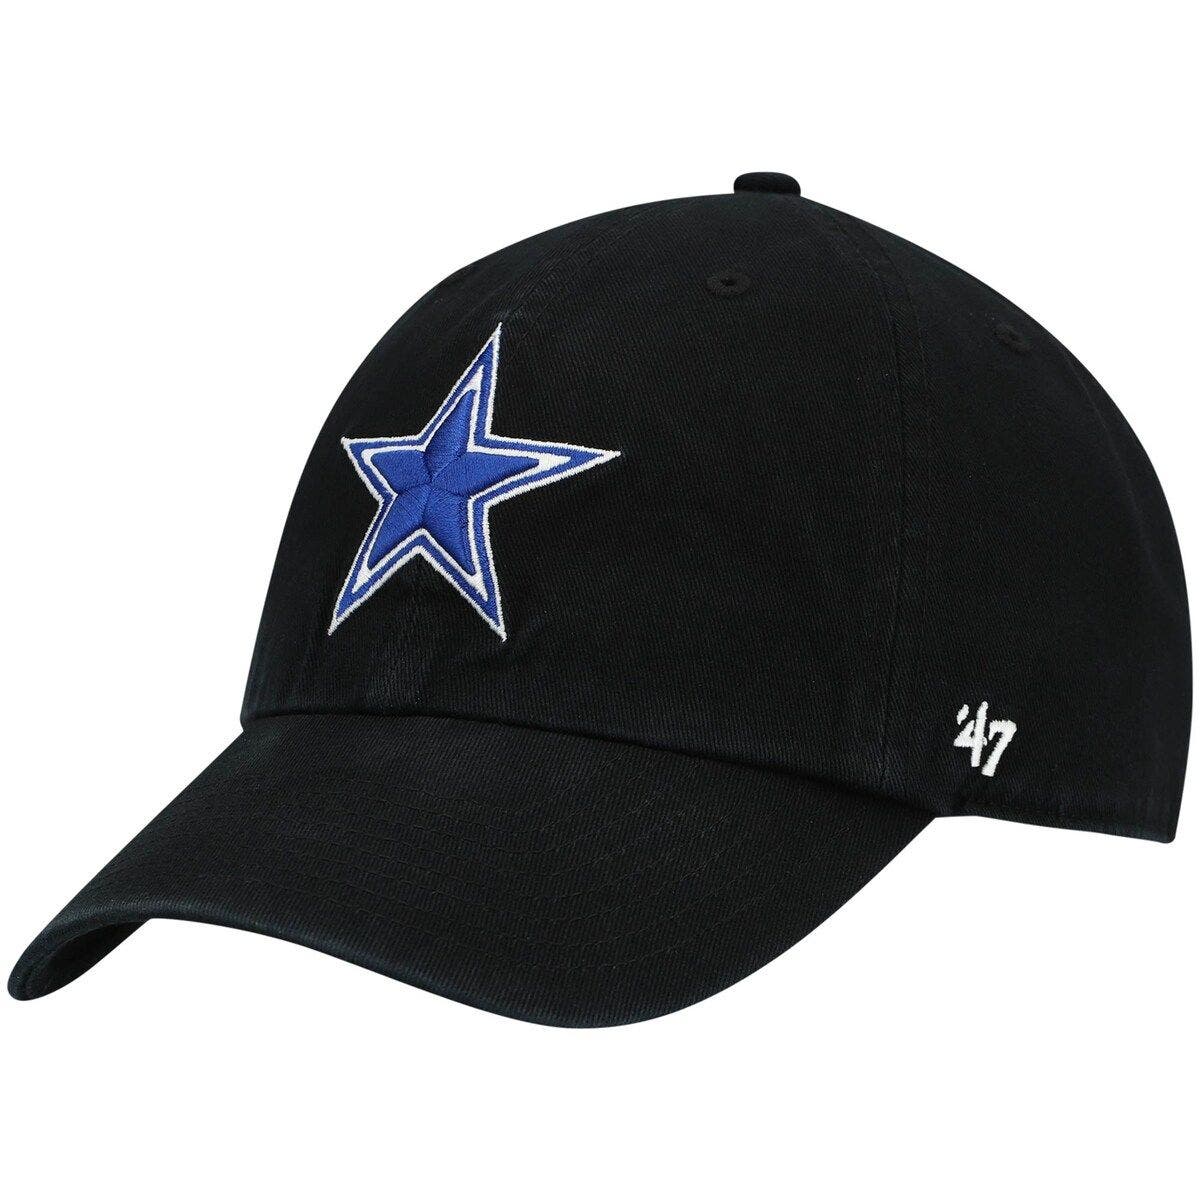 Cowboys star sideline flex cap